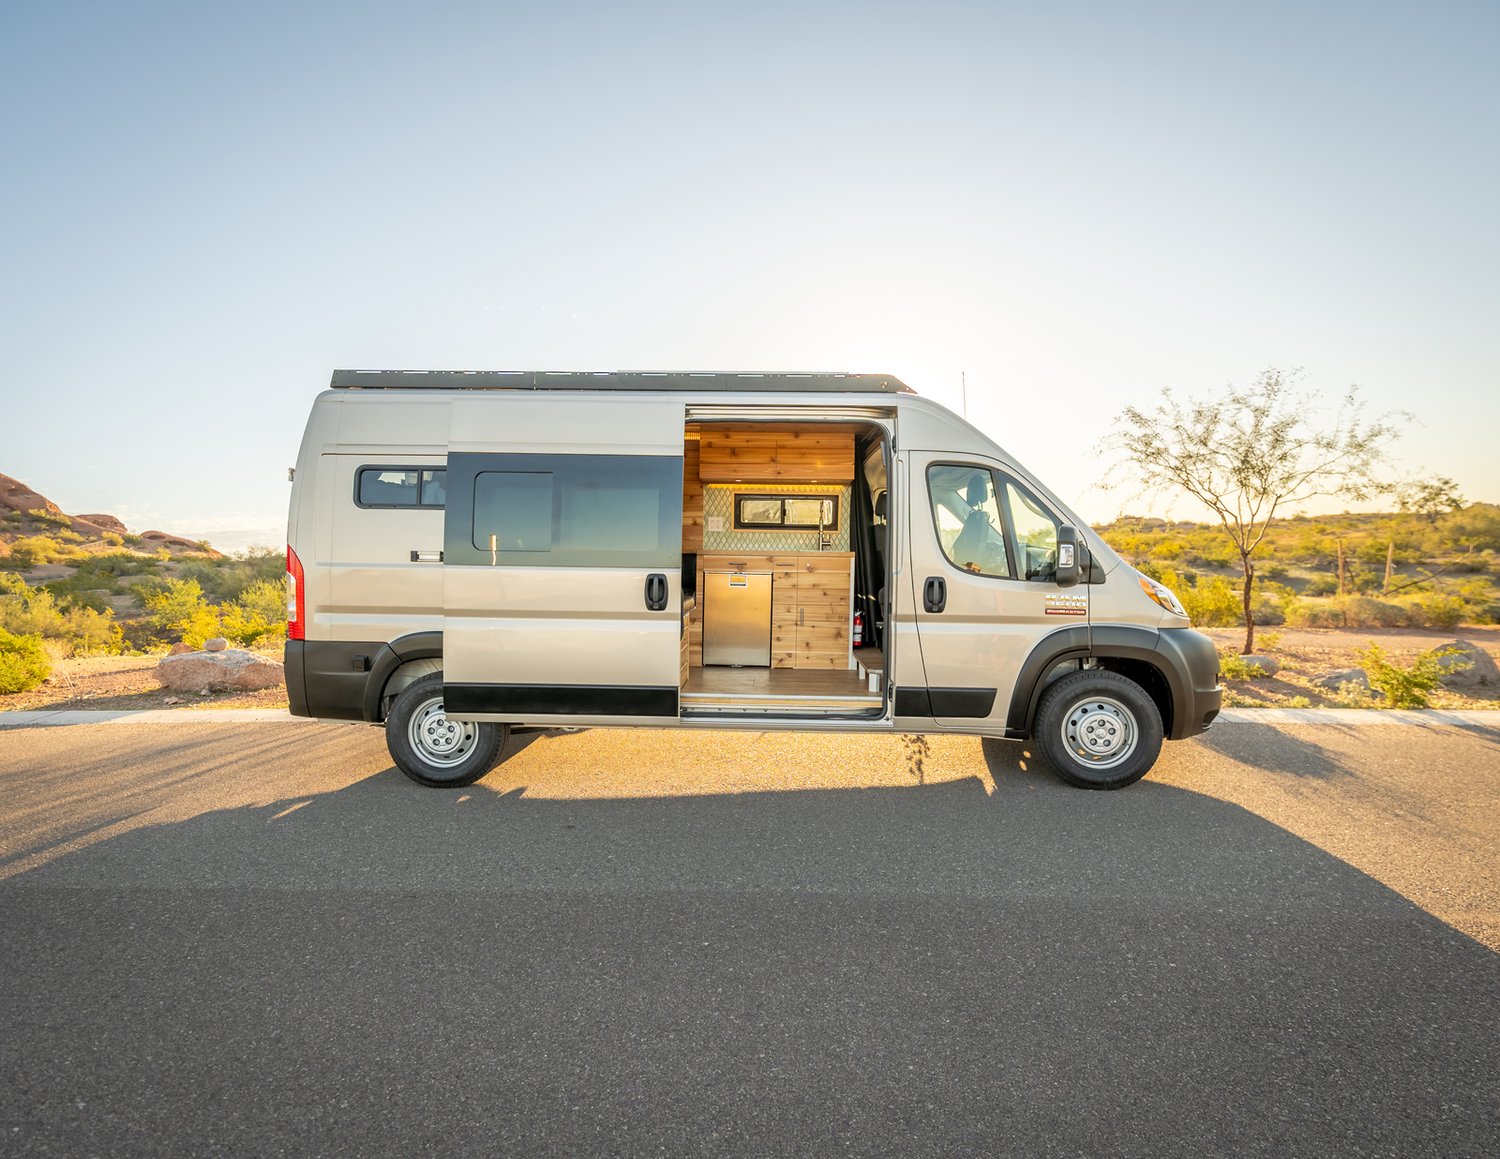 Buy or Rent a Camper Van | Boho Camper Vans